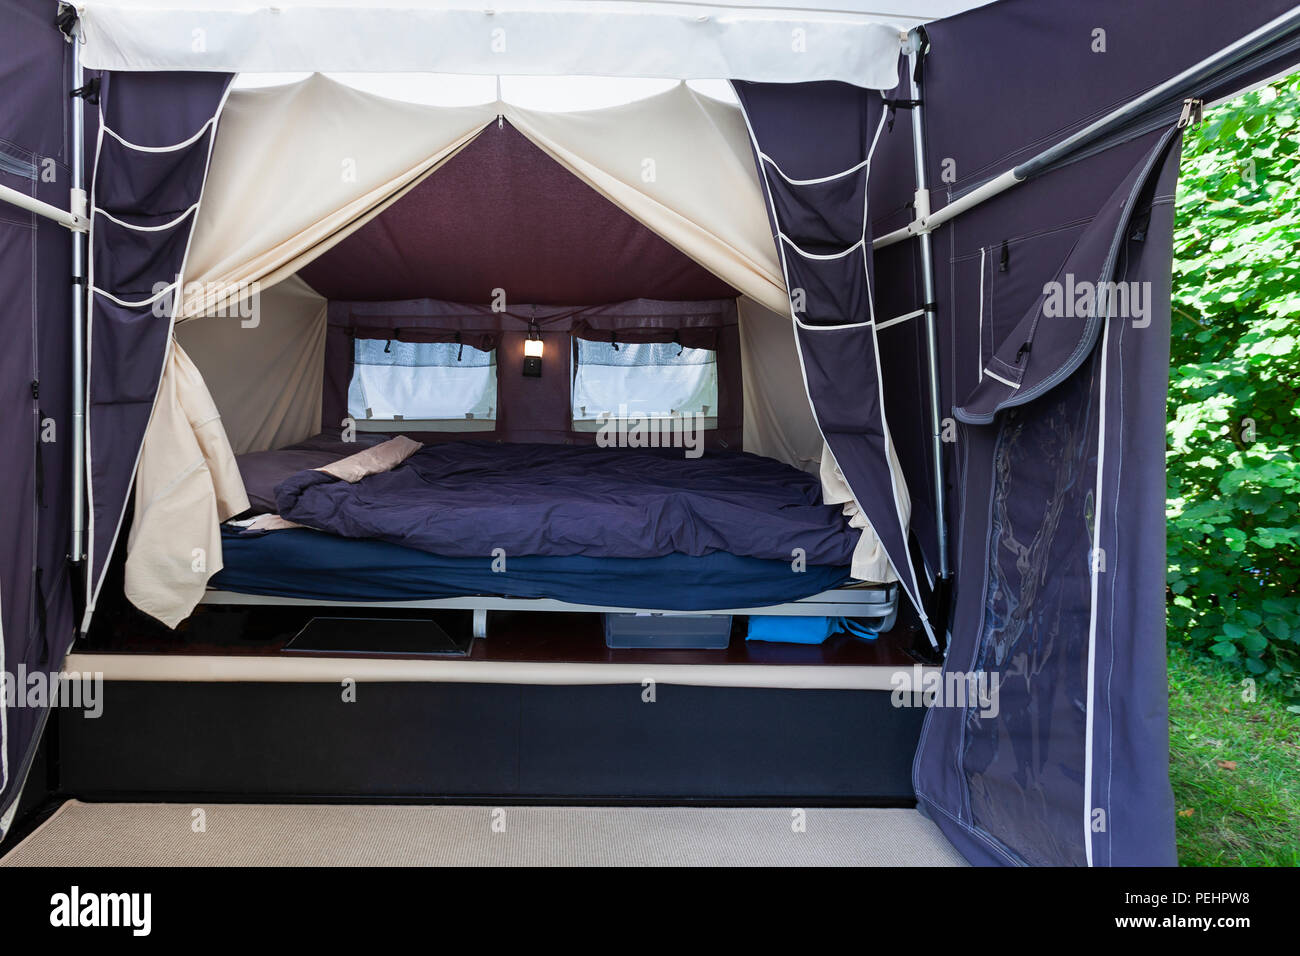 Camping oder Glamping mit einem echten Bett mit Matratze in einem Zelt  Stockfotografie - Alamy